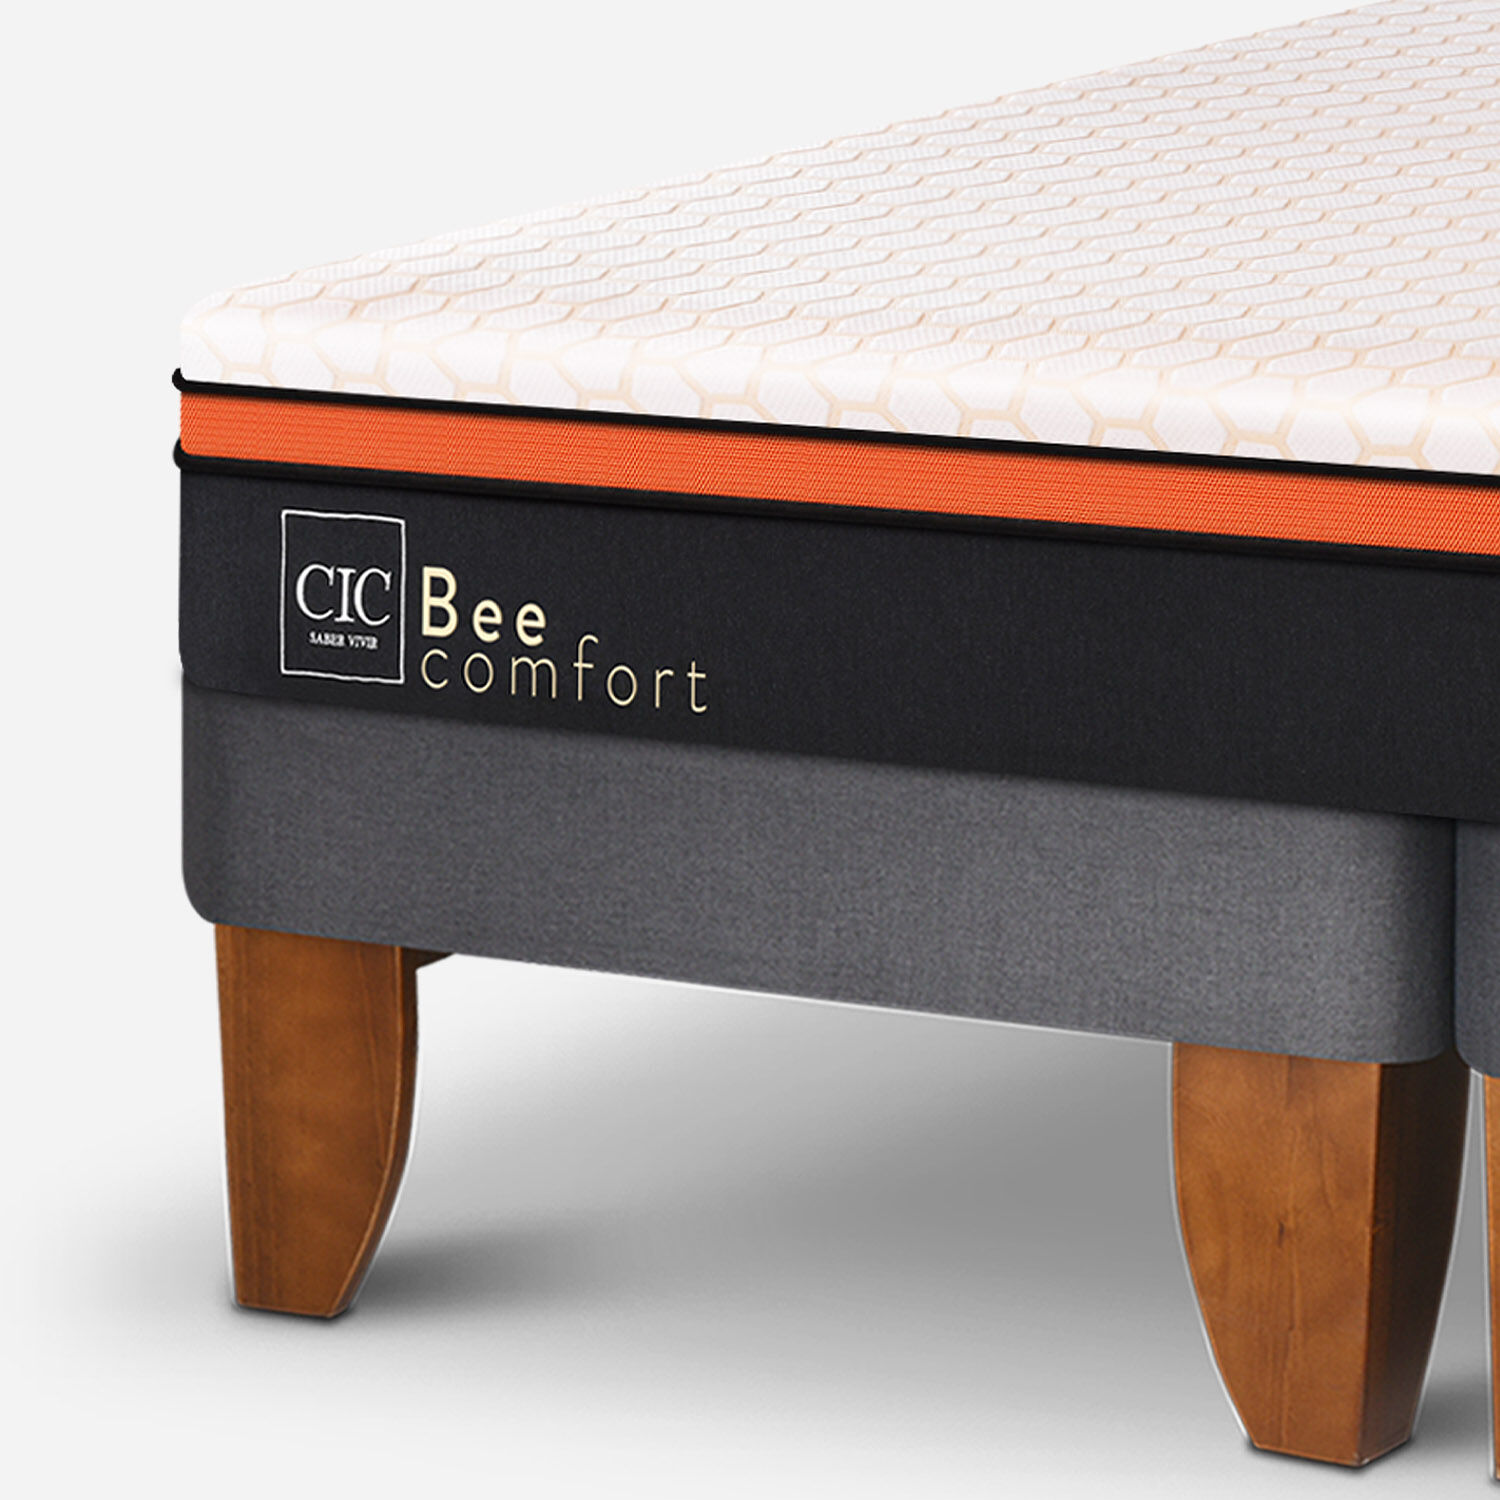 Cama Europea King Bee Comfort + Set Támesis